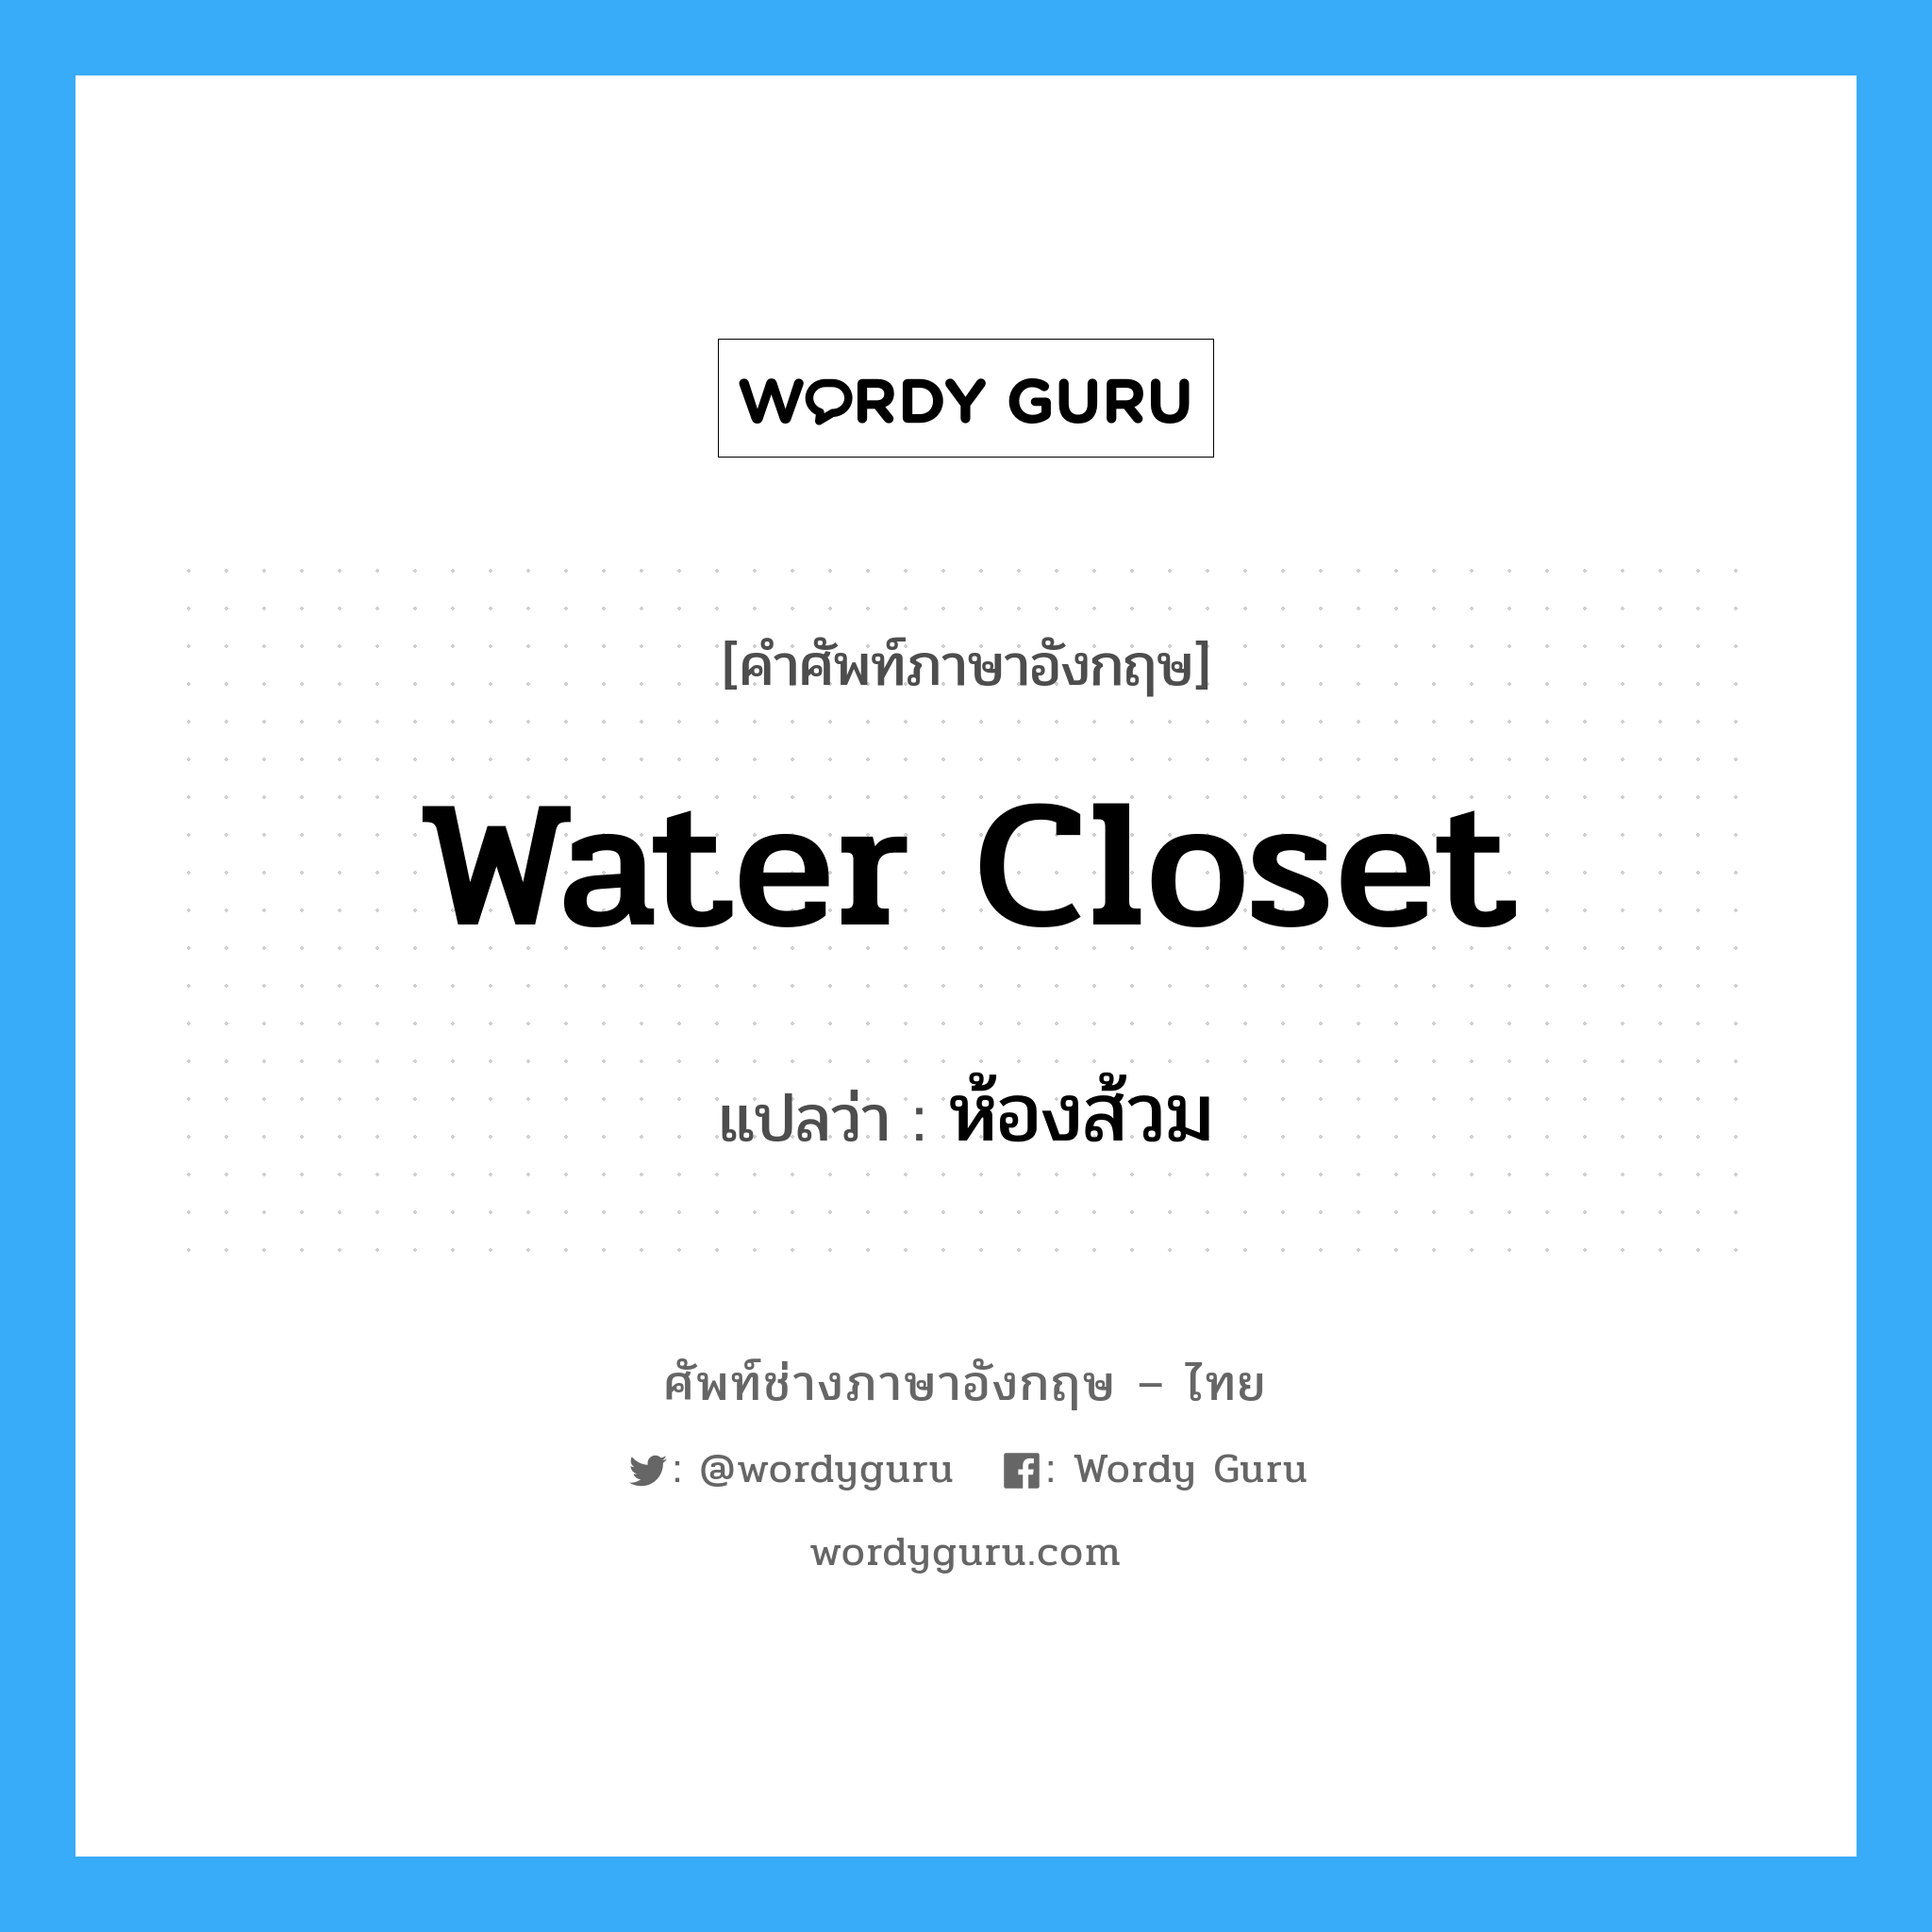 water-closet แปลว่า?, คำศัพท์ช่างภาษาอังกฤษ - ไทย water closet คำศัพท์ภาษาอังกฤษ water closet แปลว่า ห้องส้วม